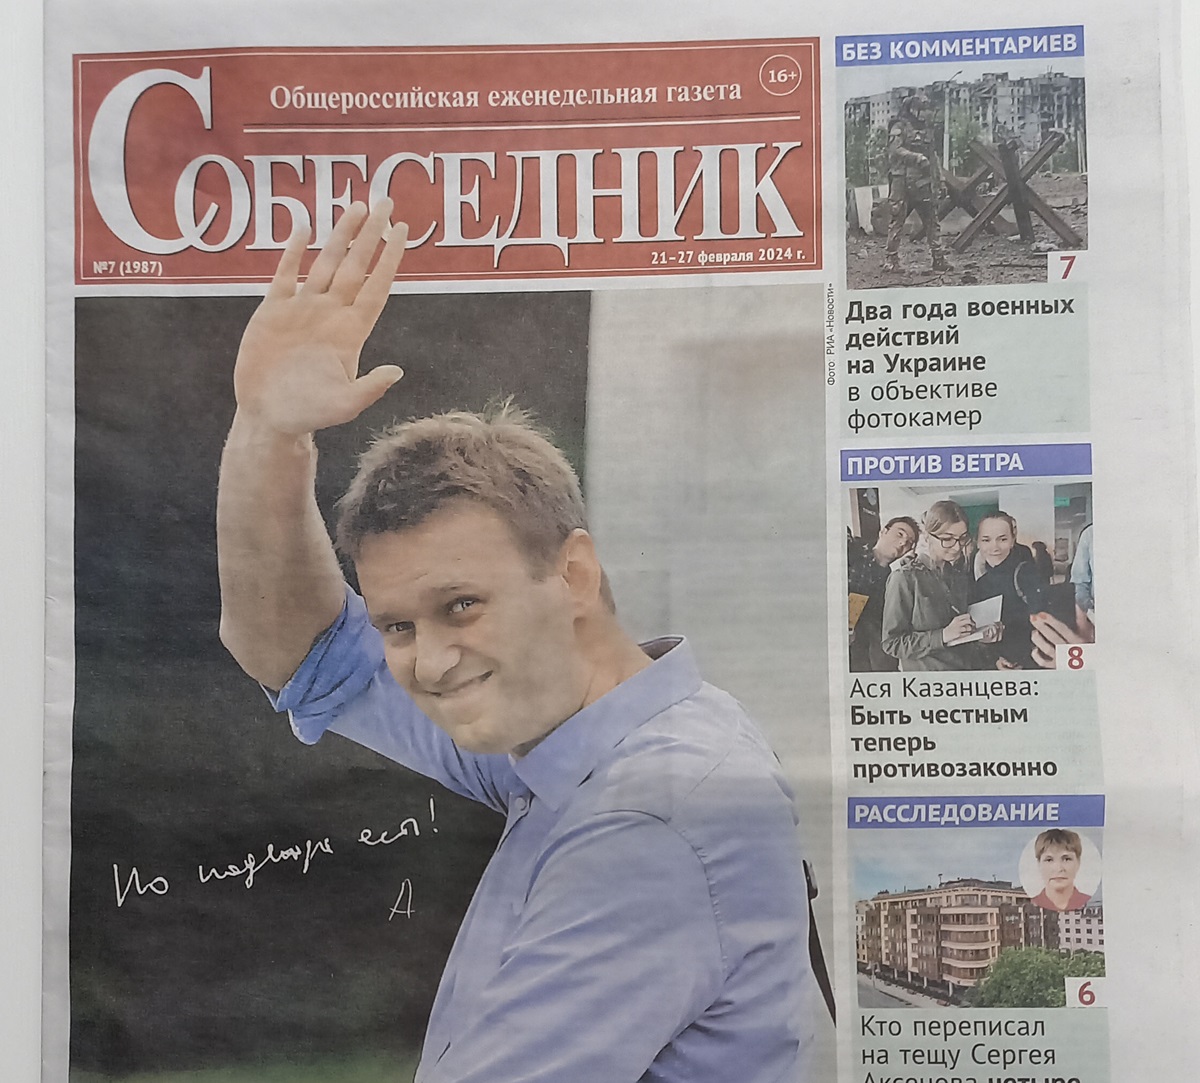 Fotografía tomada en Moscú que muestra un ejemplar del periódico “Sobesednik”, el primero que abre en portada con el líder opositor ruso Alexéi Navalni, EFE/ Ignacio Ortega